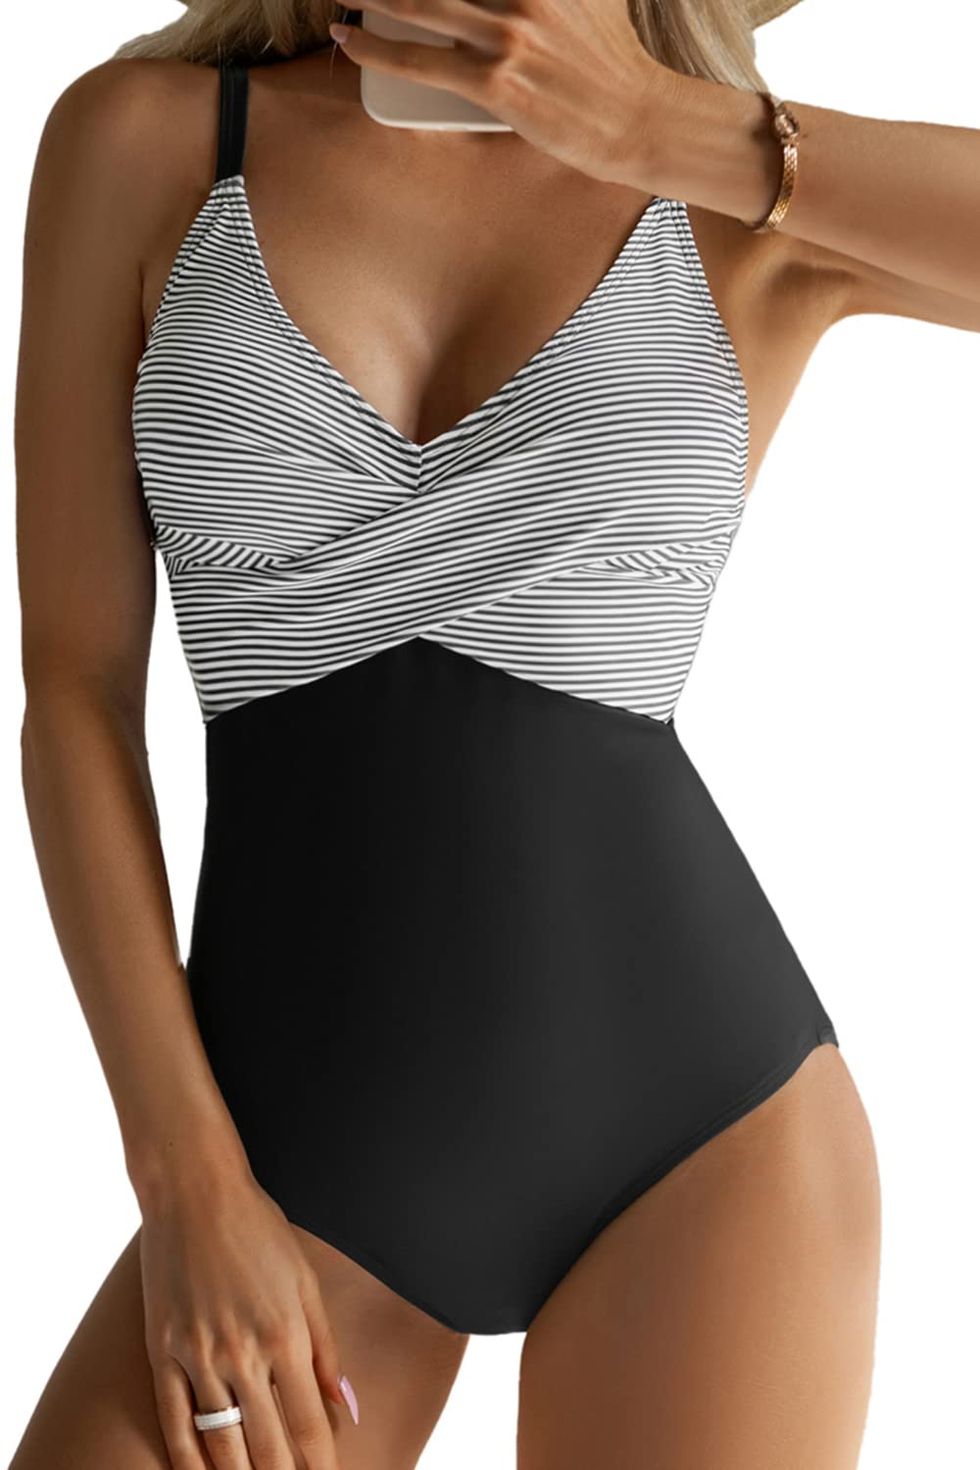 MODERN STRIPE Bandeau One-piece Swimsuit - Modern stripes